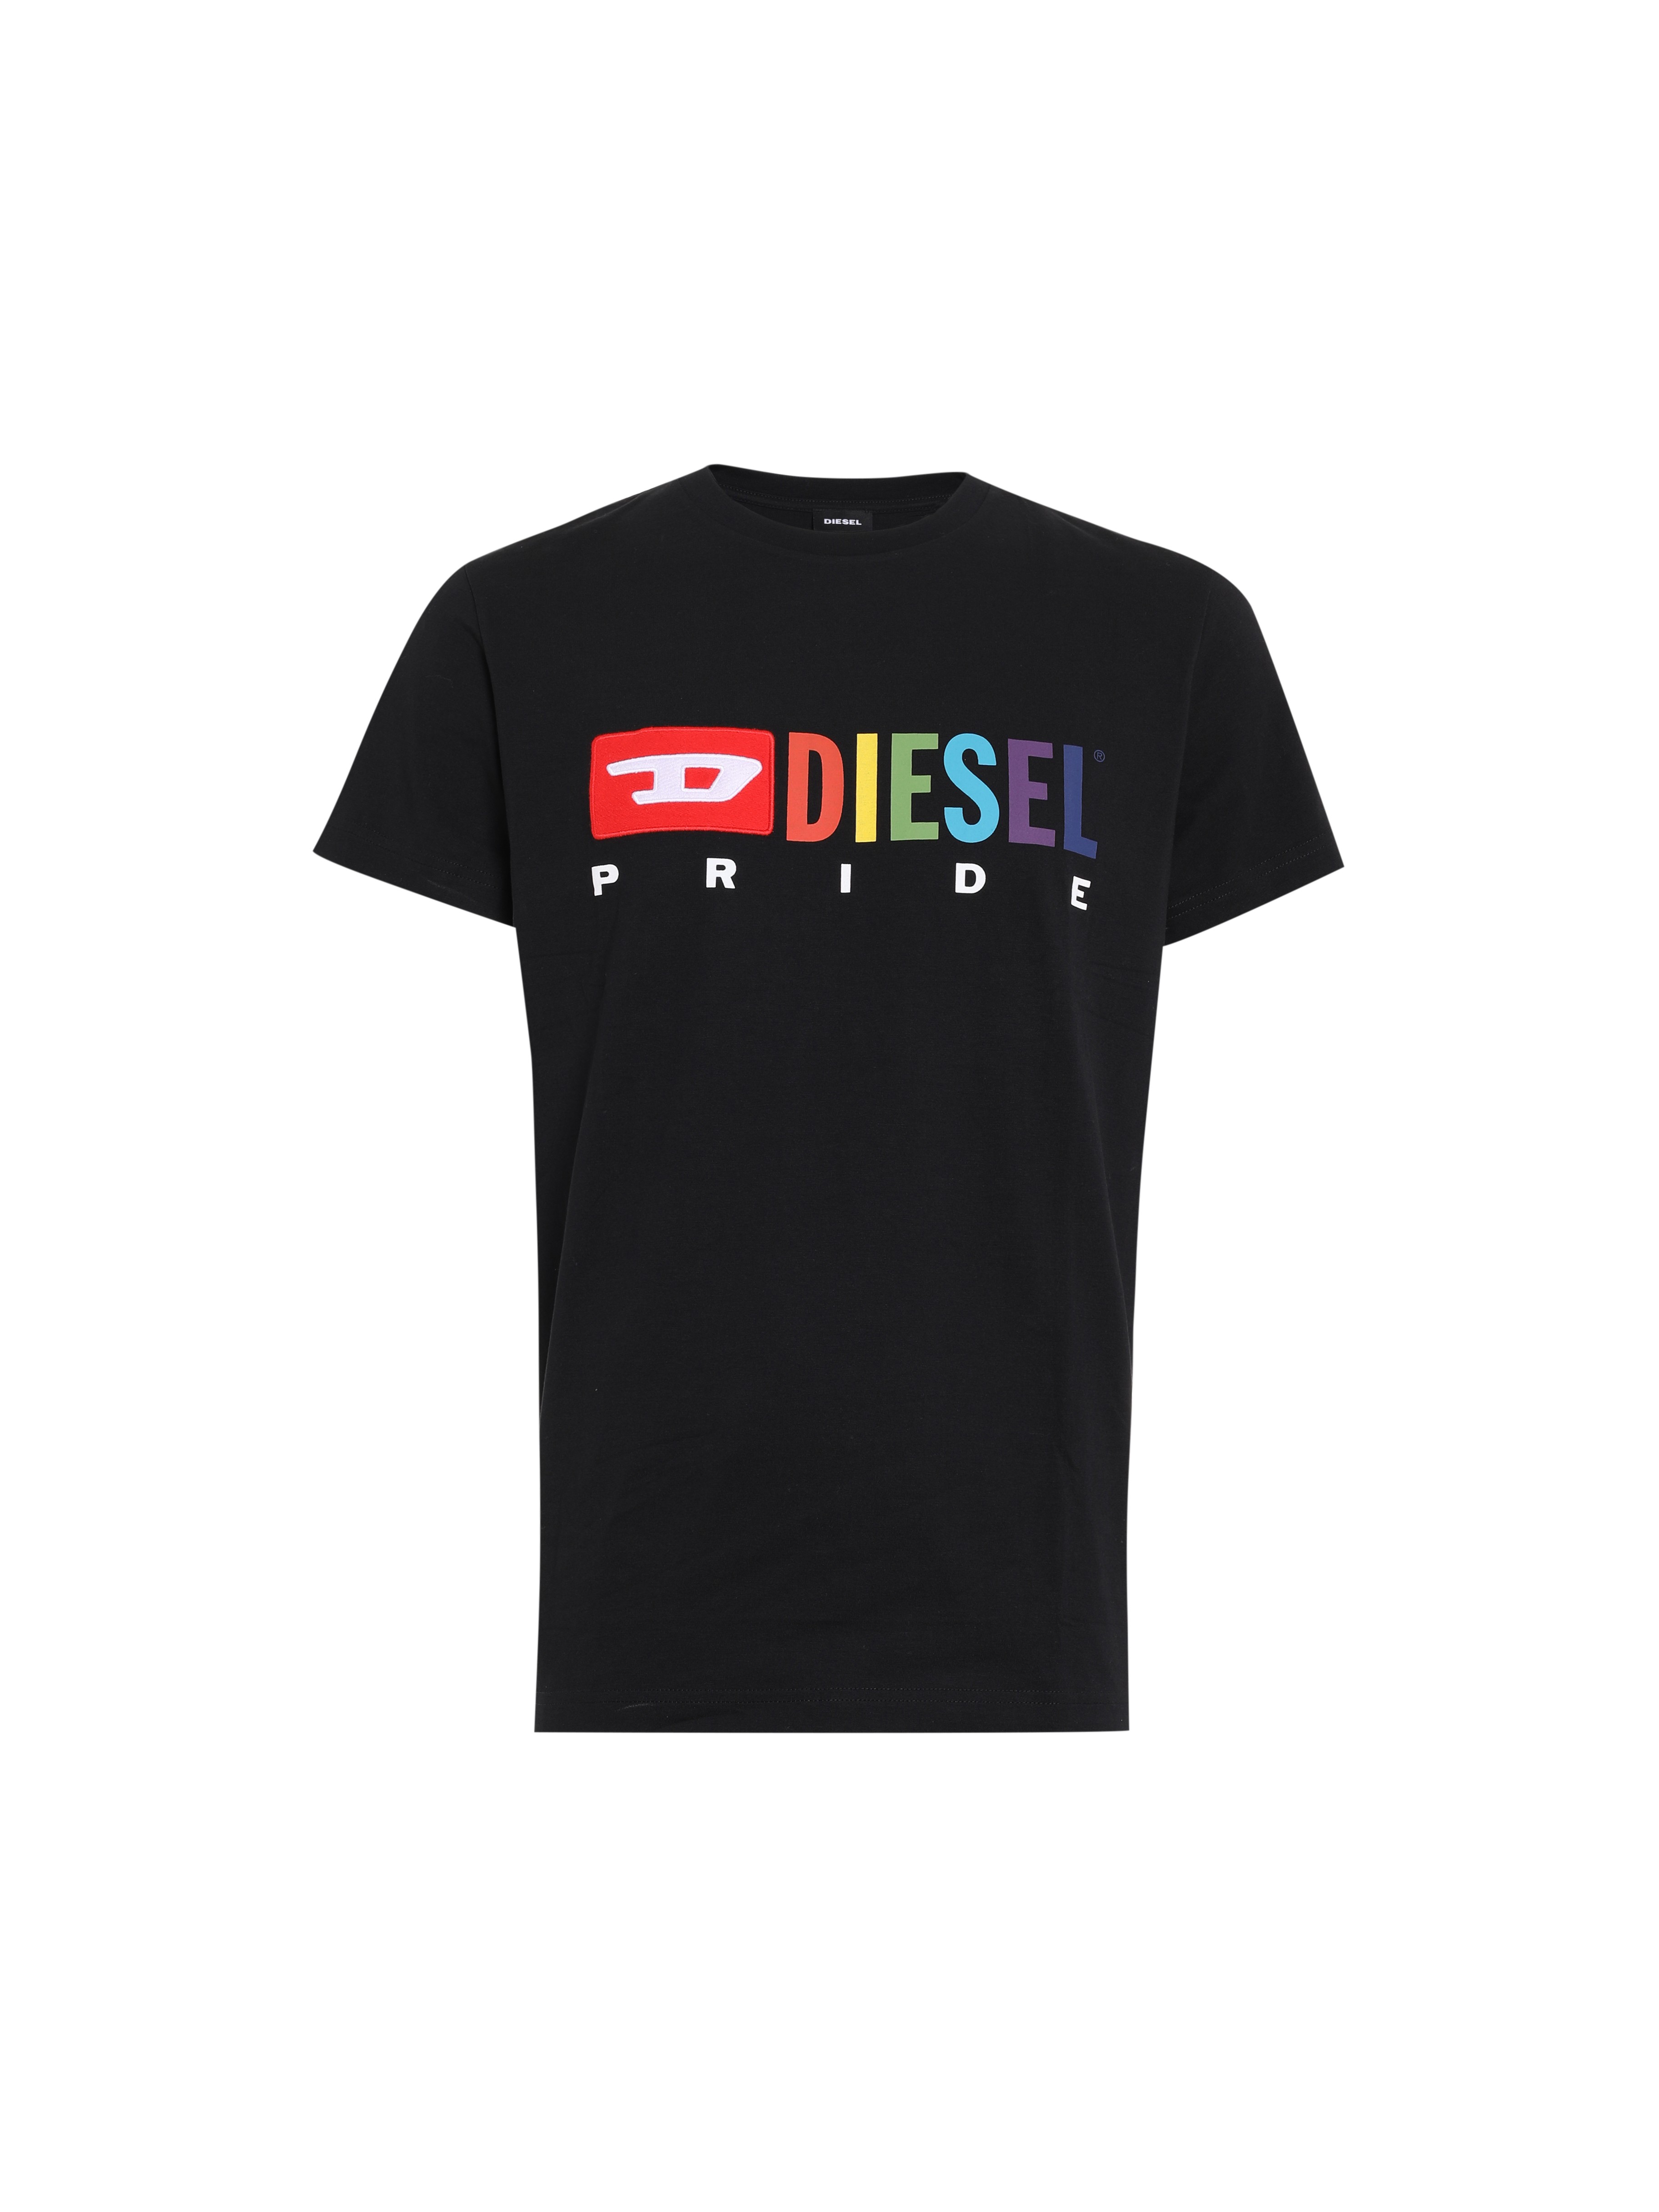 Coleção Pride da Diesel (Foto: Divulgação)